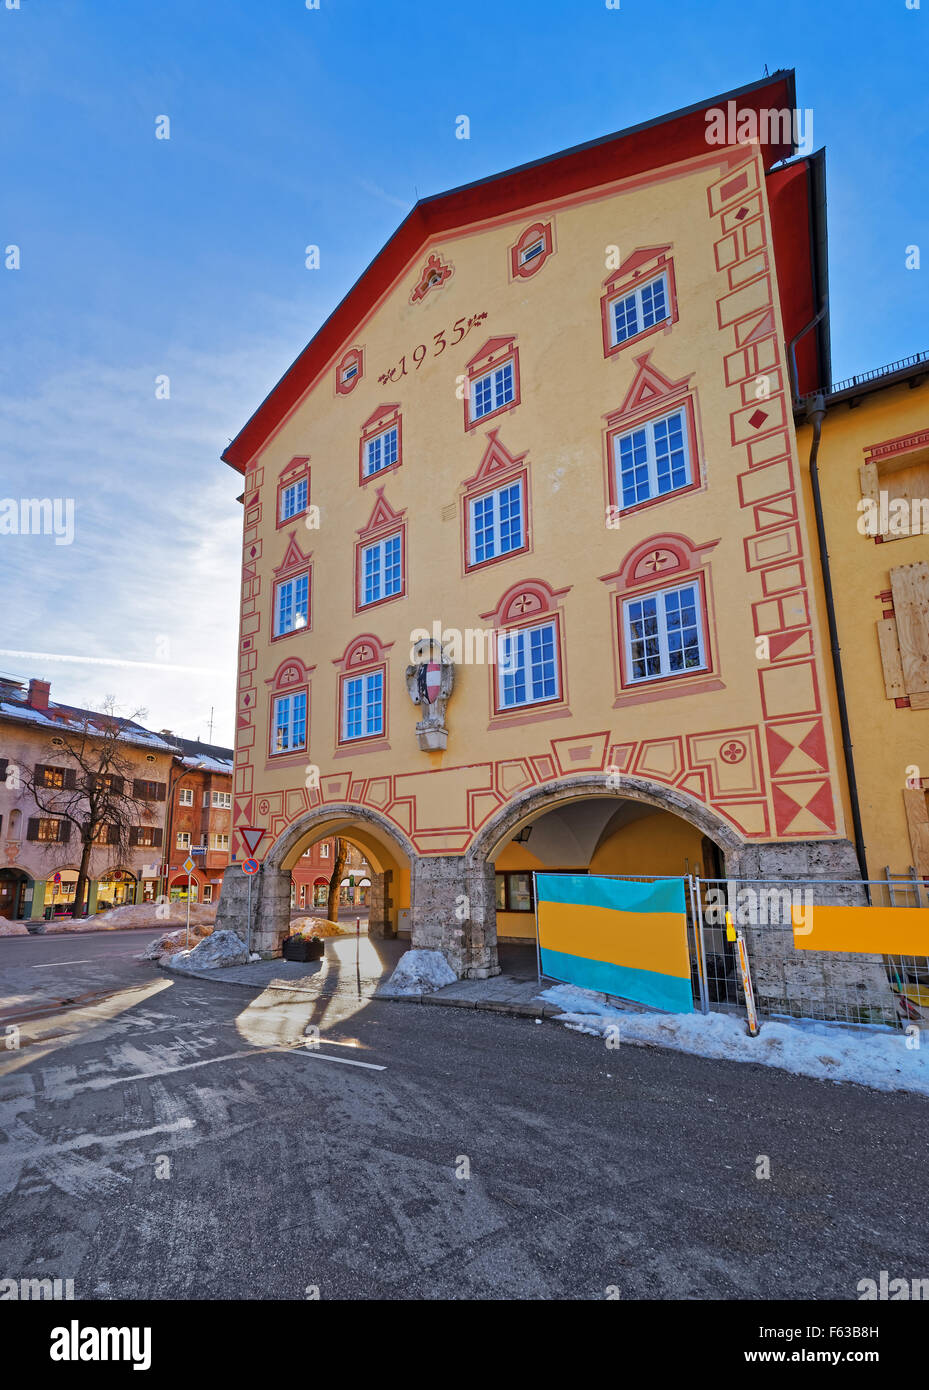 Fachada de una de las casas en Garmisch-Partenkirchen, Alemania. Los bávaros tienen una larga historia de decorar las fachadas de sus casas y negocios con ambas pinturas históricas y religiosas Foto de stock